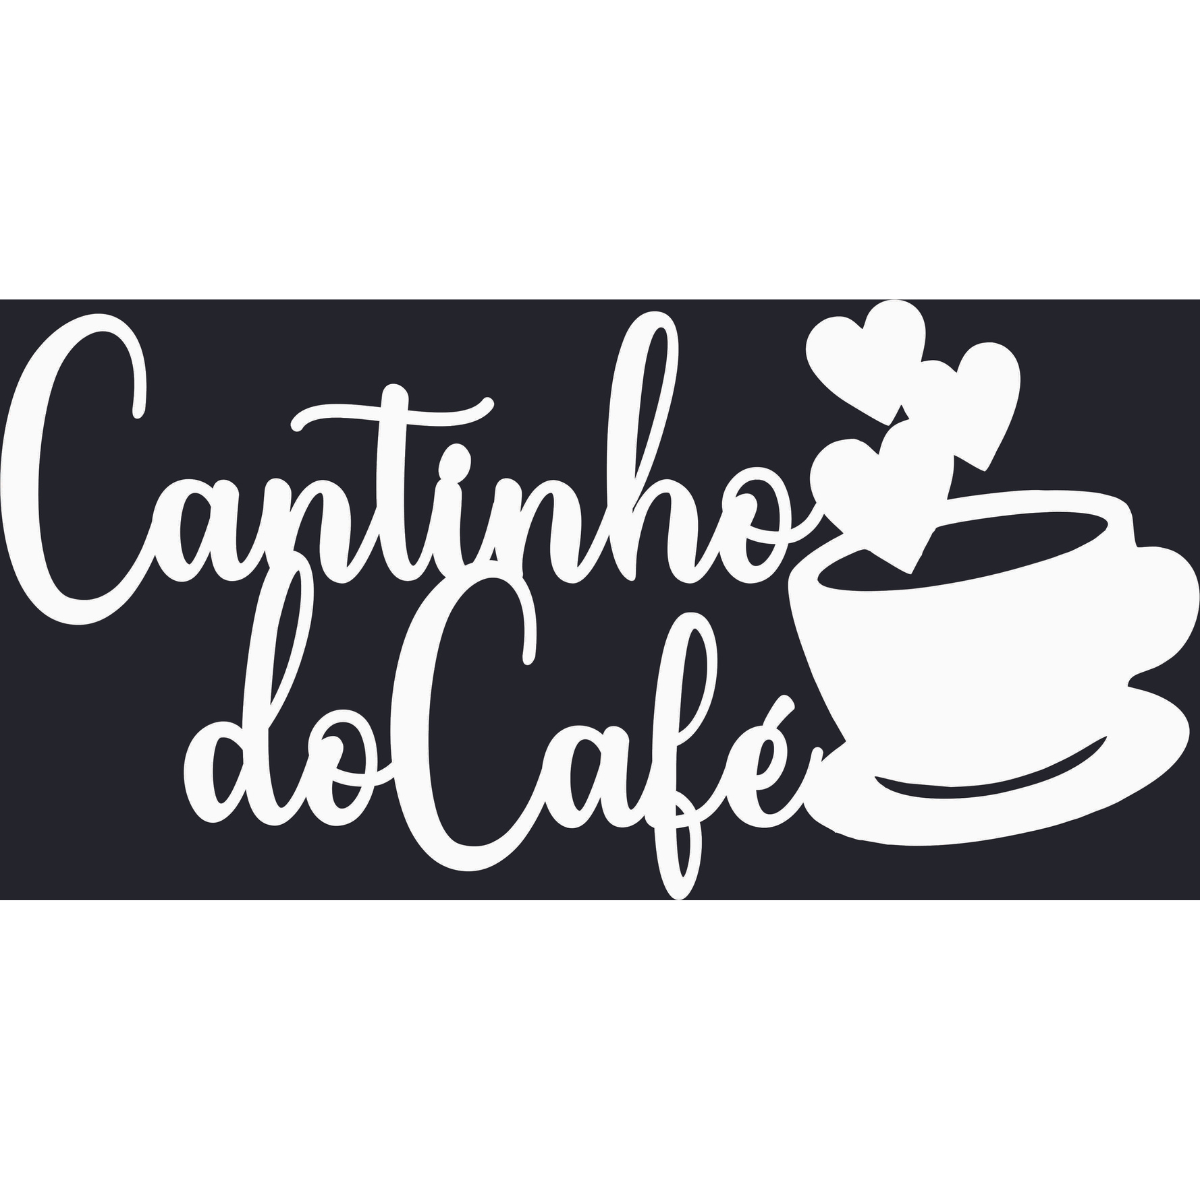 Cantinho do Cafe - Xícara - Decorativo - MDF - Branco - Escrita Placa Aplique - 58x30cm